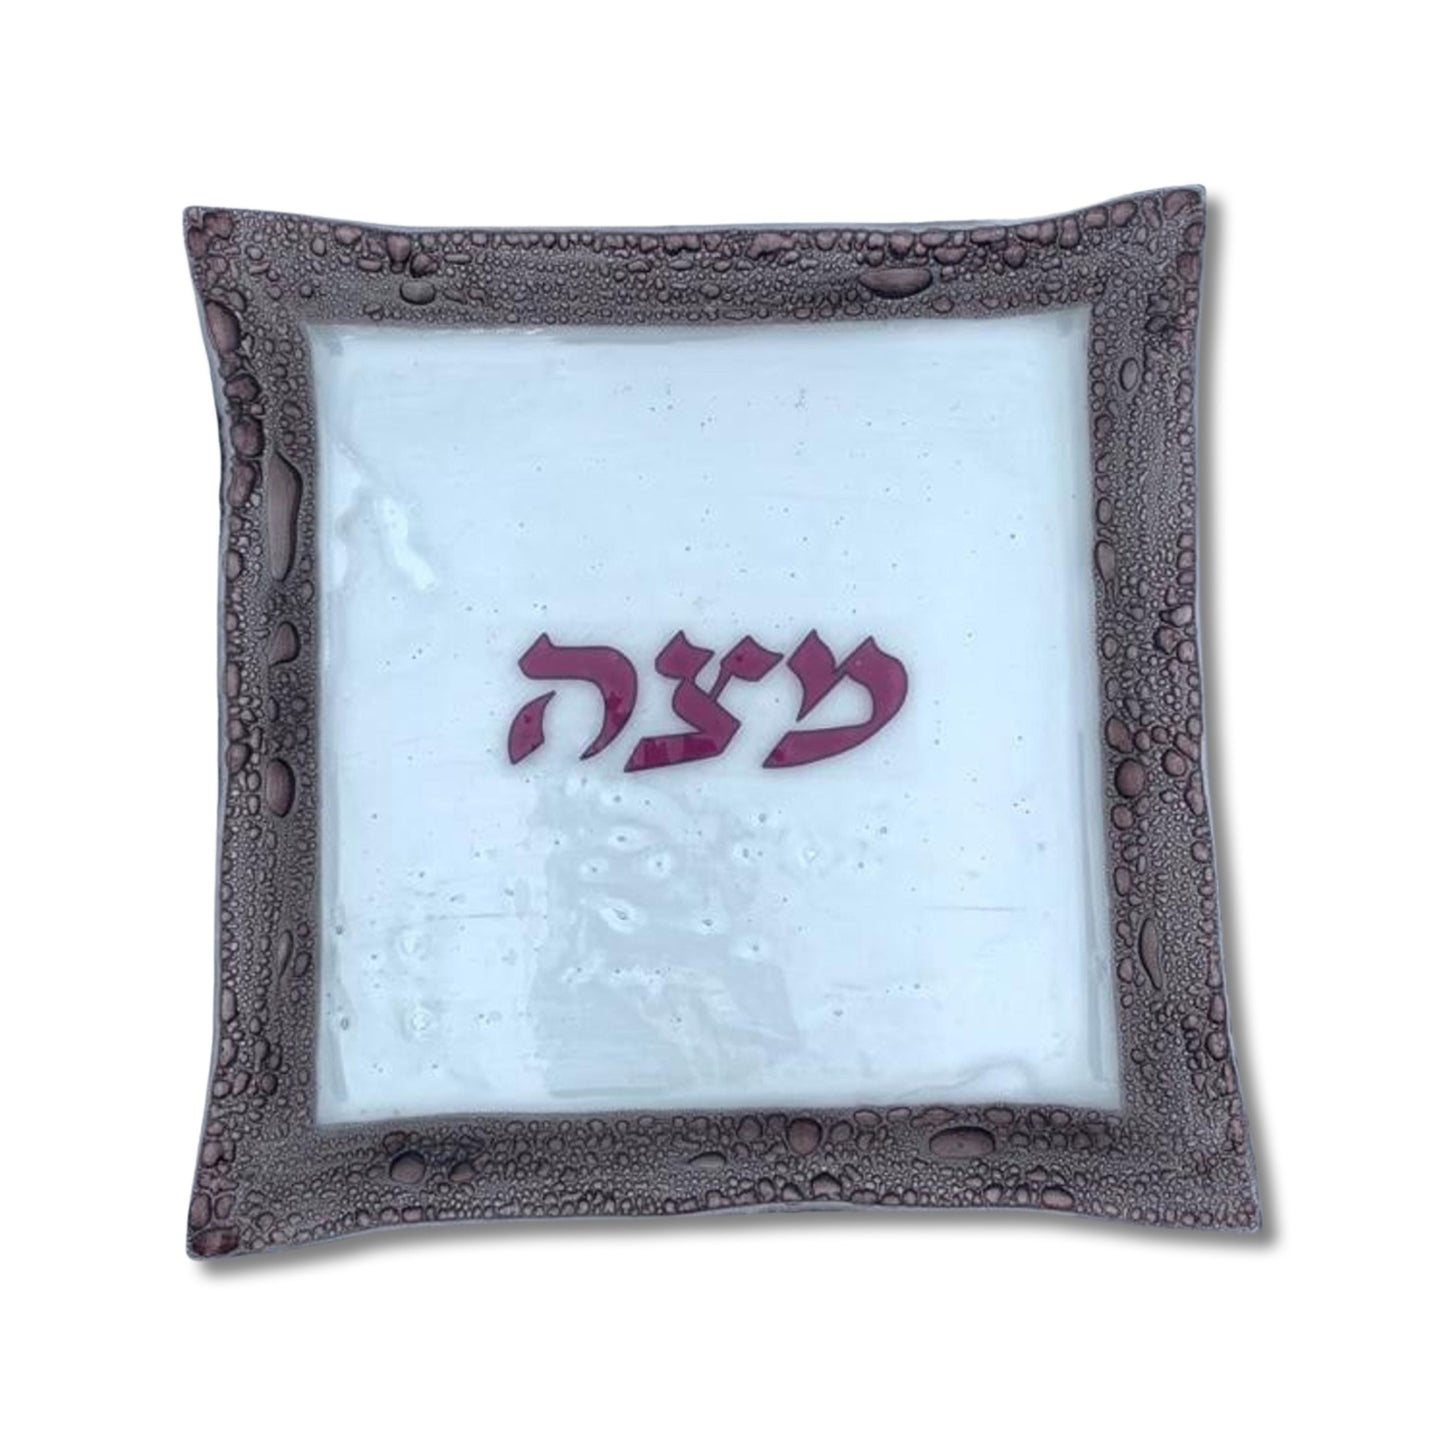 Bubbled Glass Passover Matzah Plate